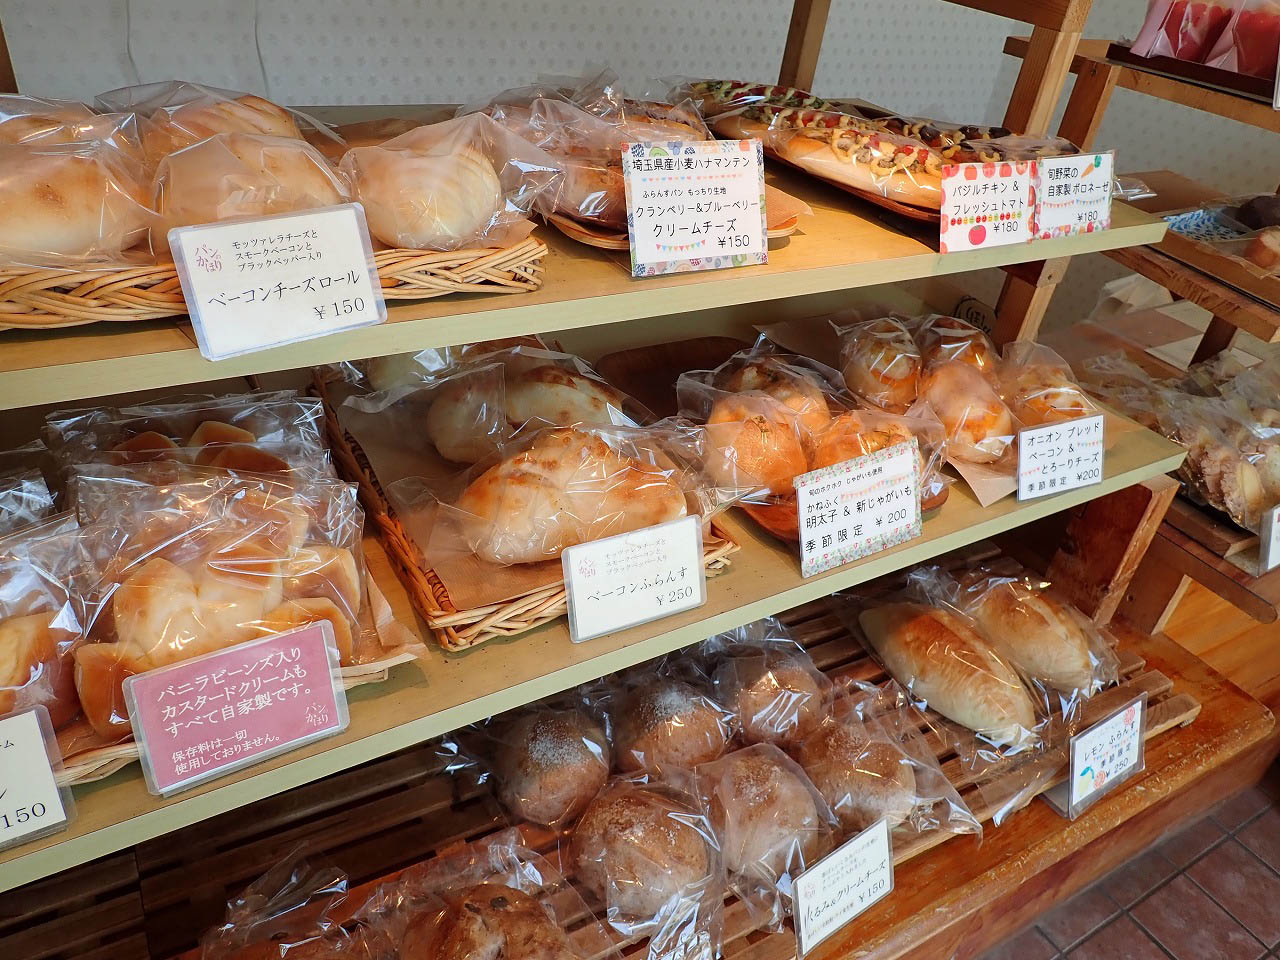 川越のベーカリーショップ『パンのかほり』で売られているパン